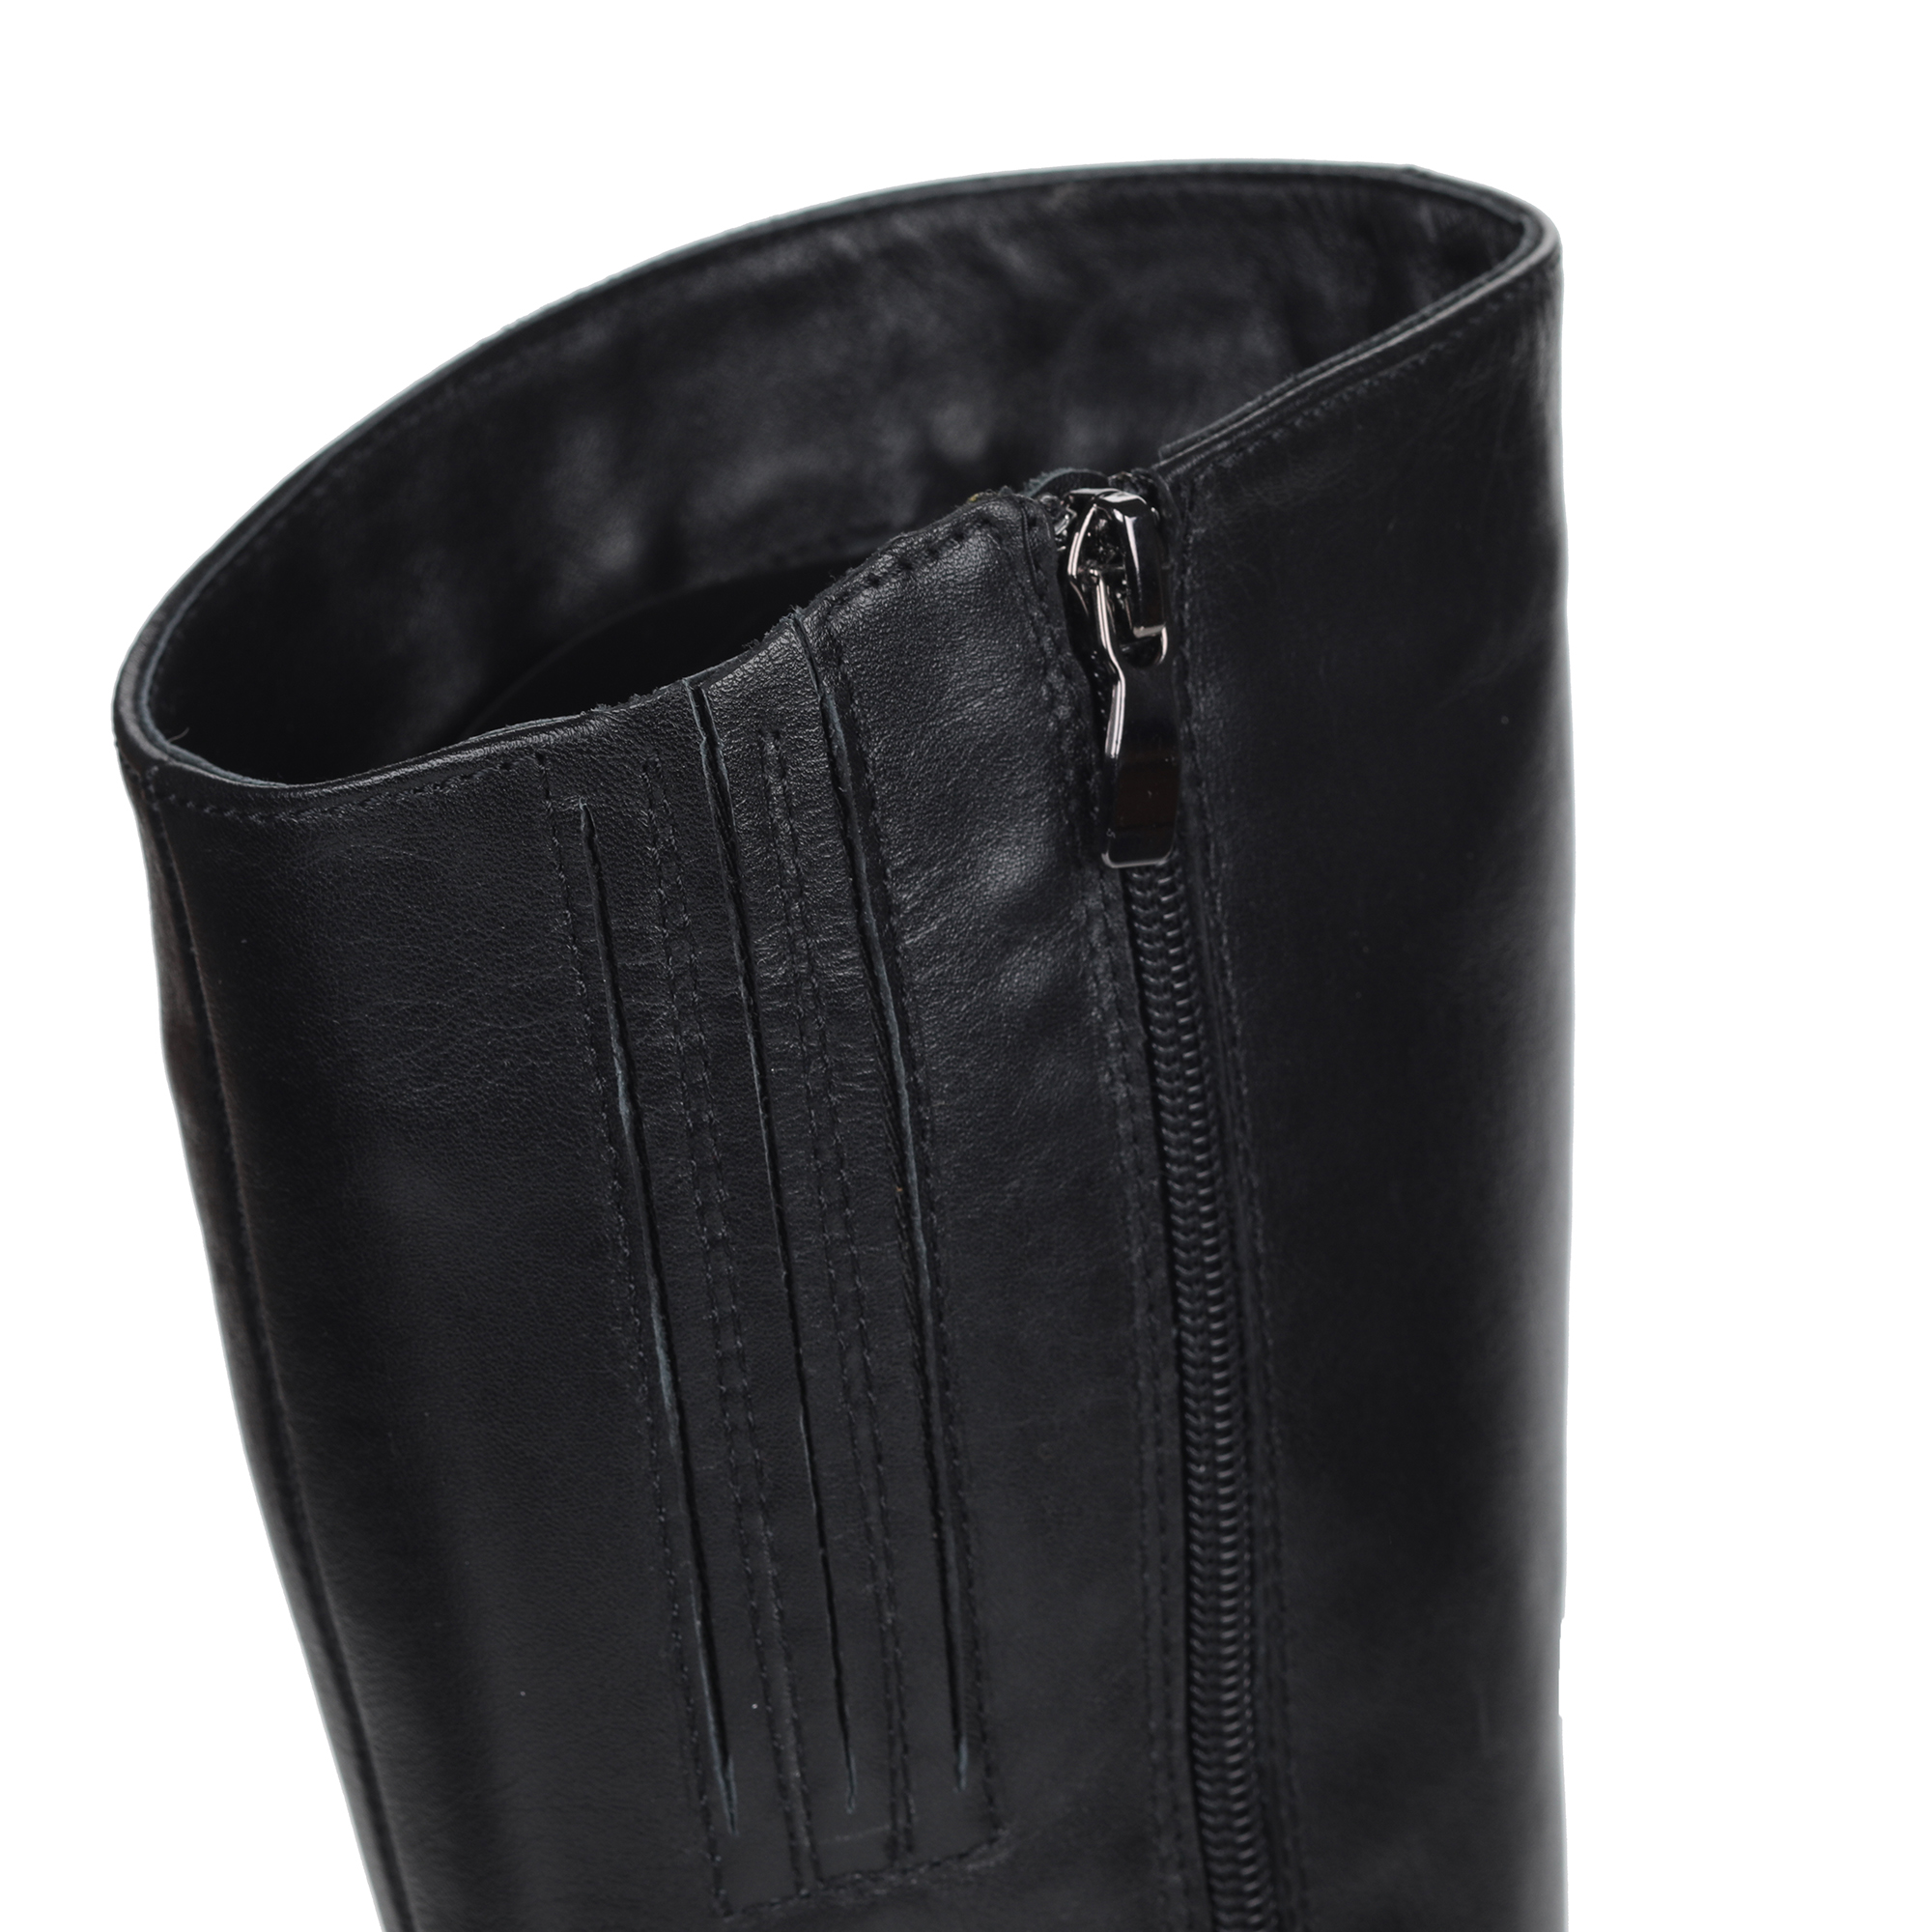 Сапоги на низком каблуке из кожи Respect, размер 38, цвет черный - фото 8